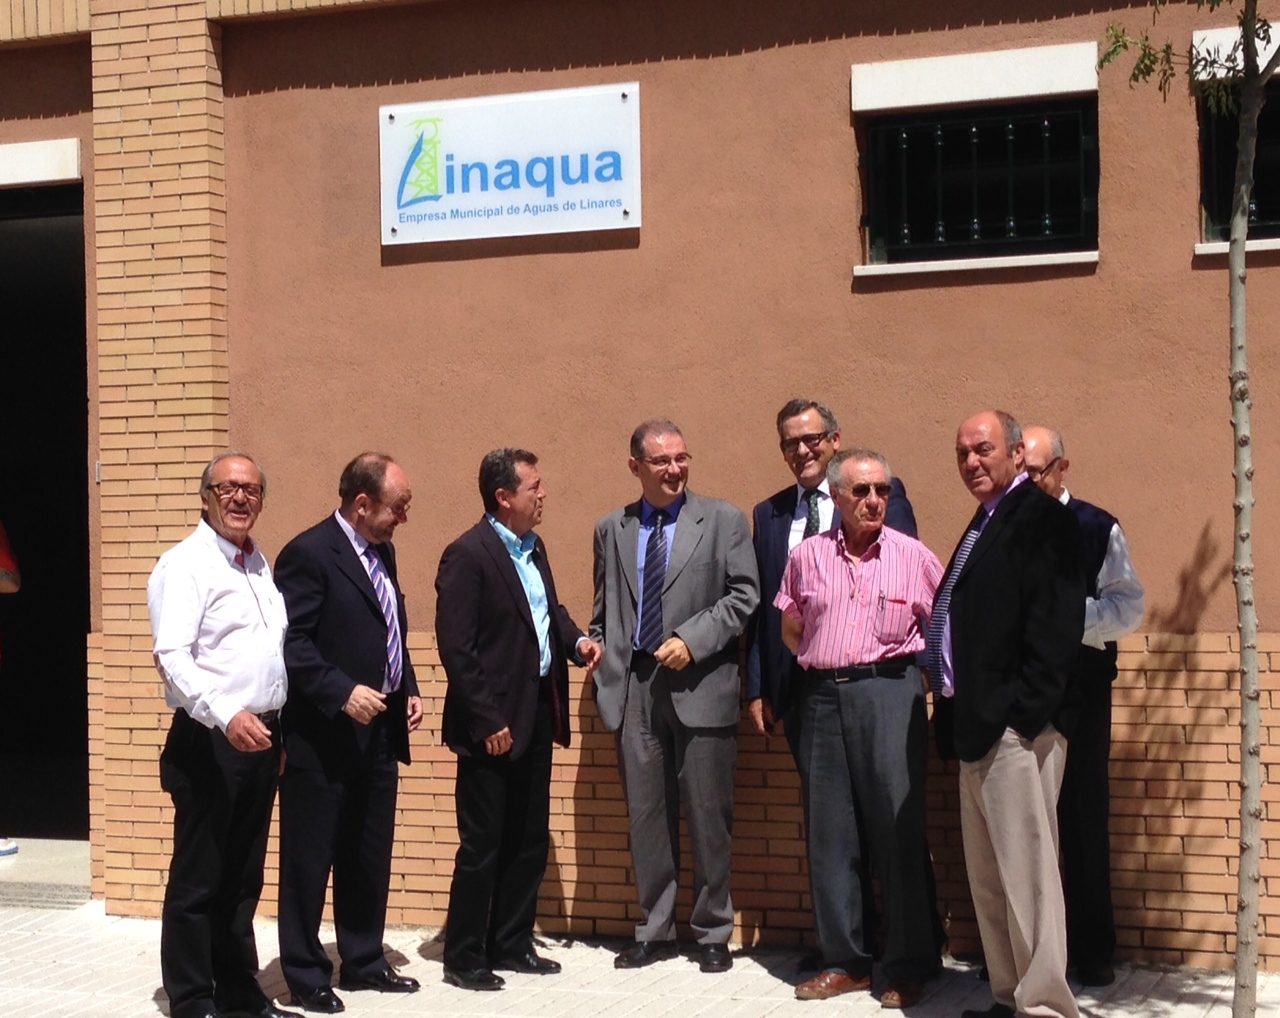 Nueva oficina y web del servicio municipal de aguas de Linares